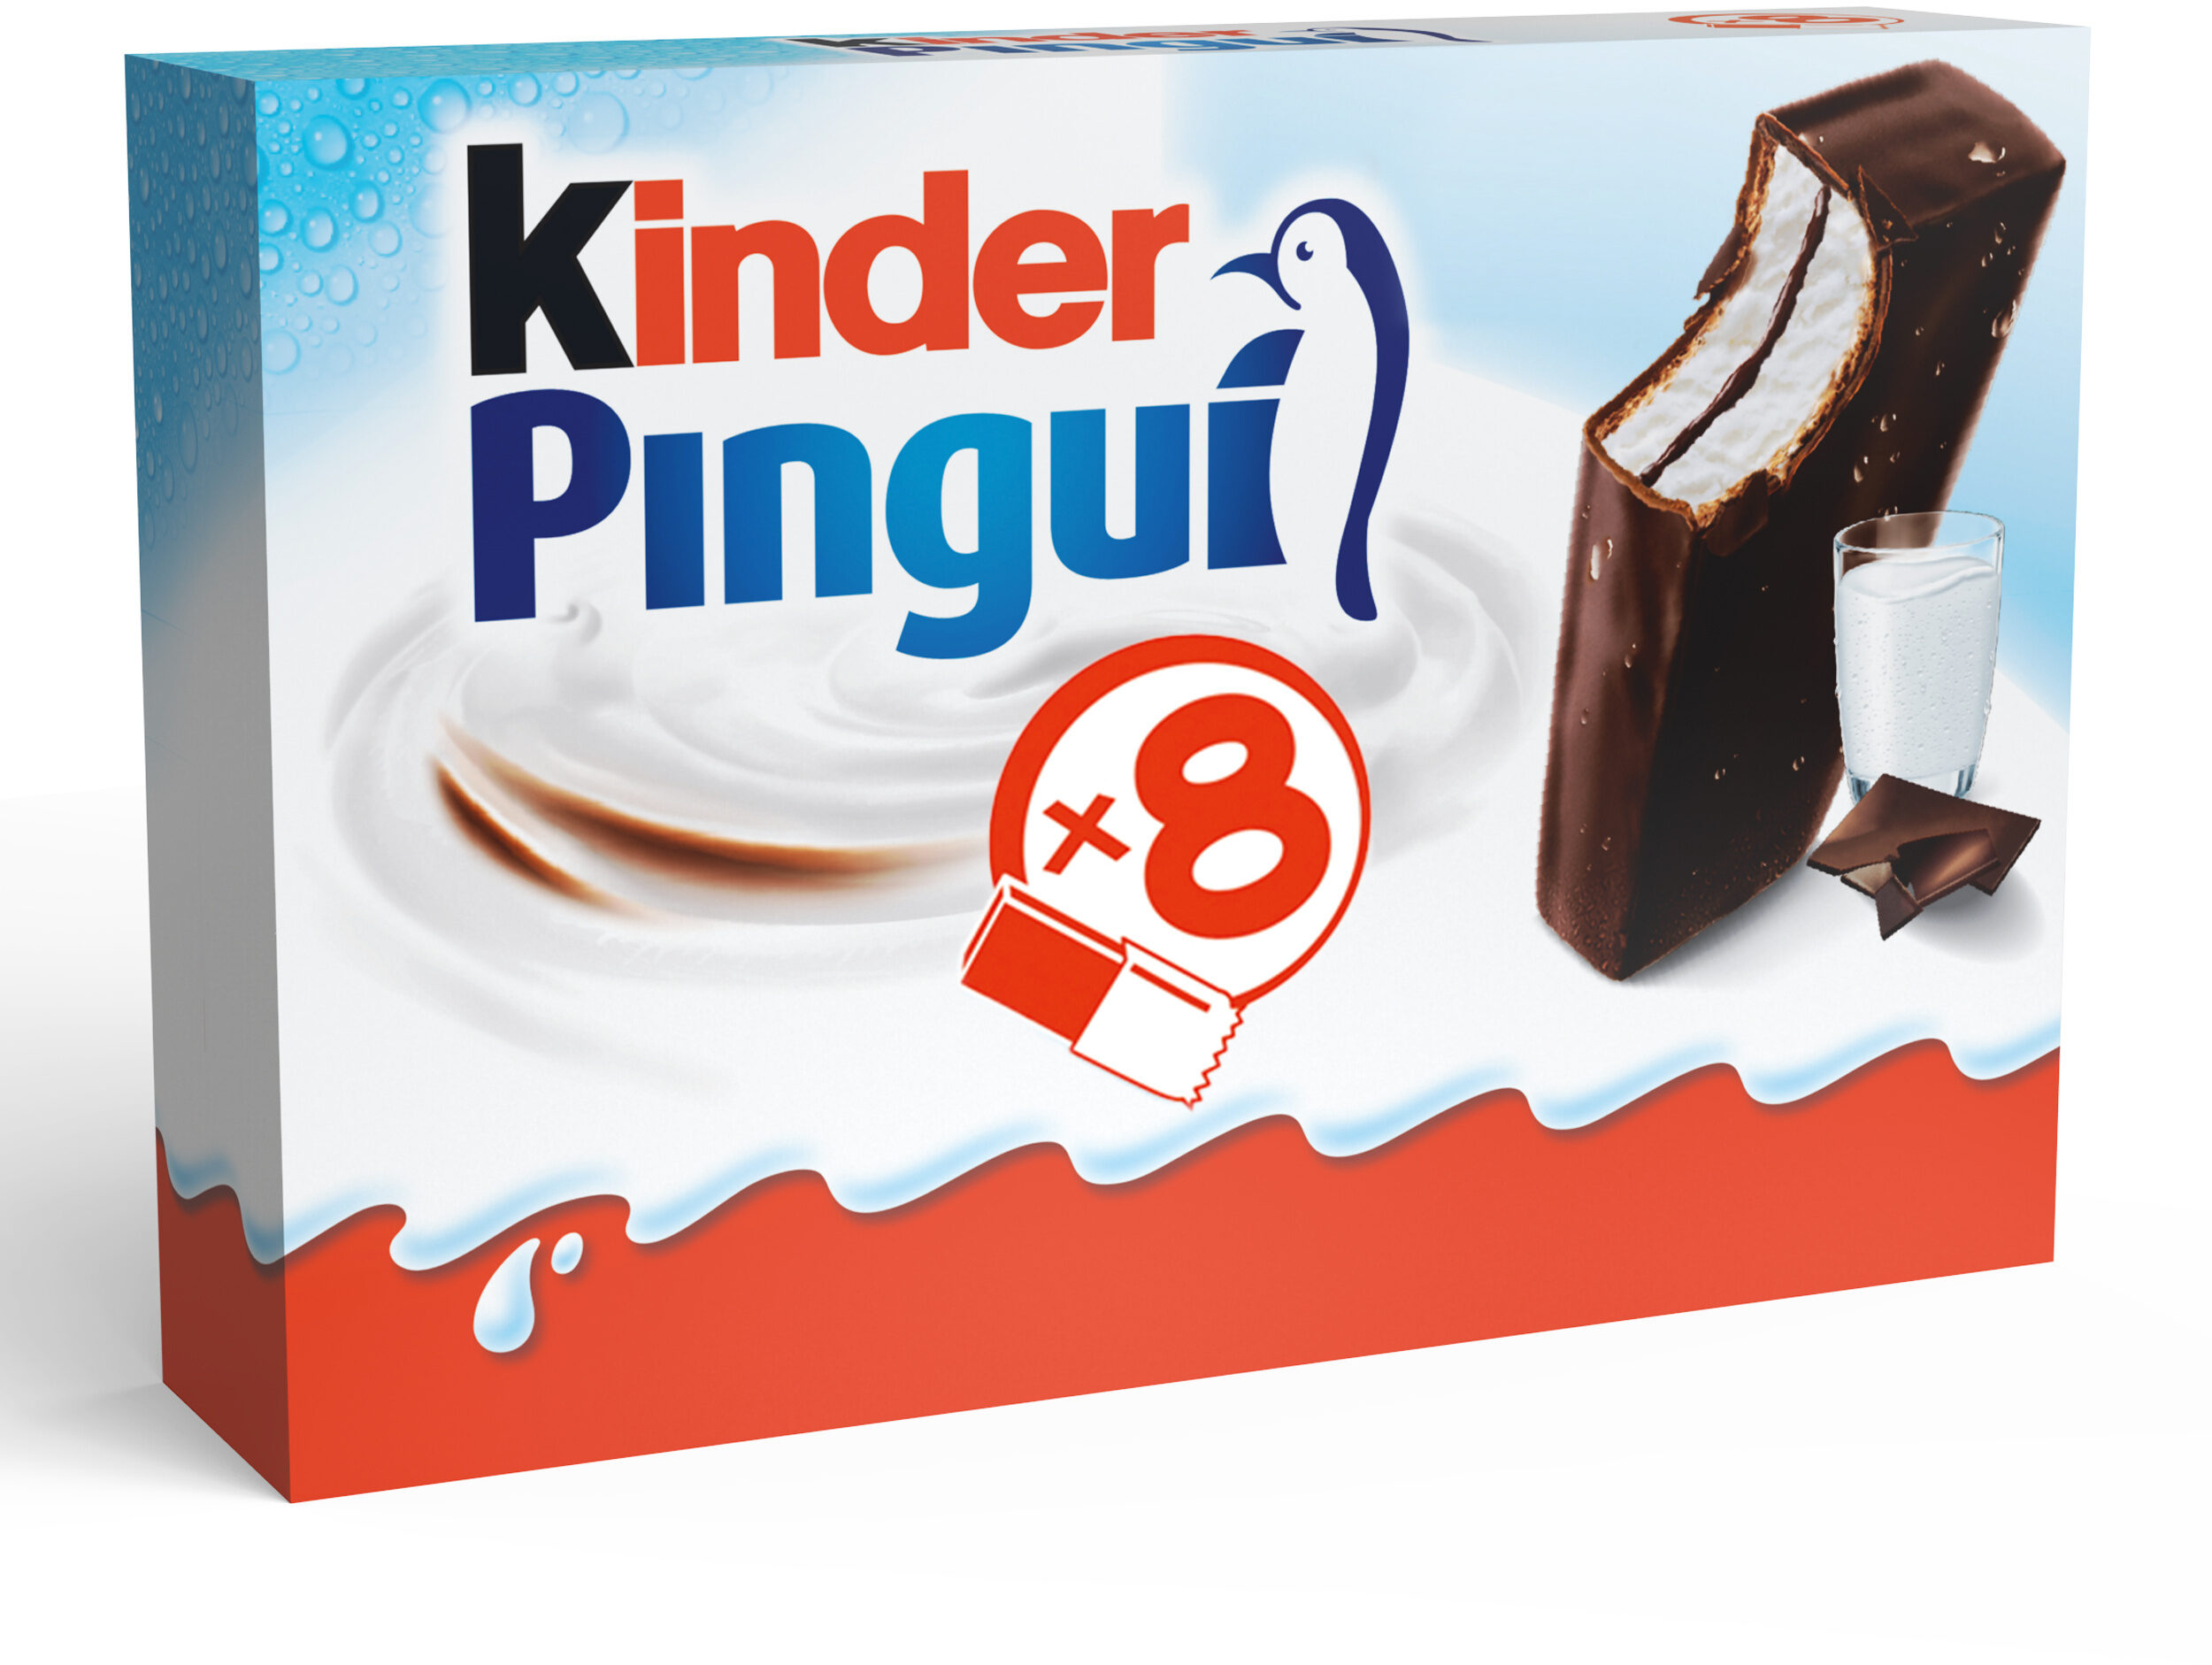 Kinder pingui gouter frais genoise avec chocolat noir extra, fourree lait et cacao t8 pack de 8 etuis - Produit